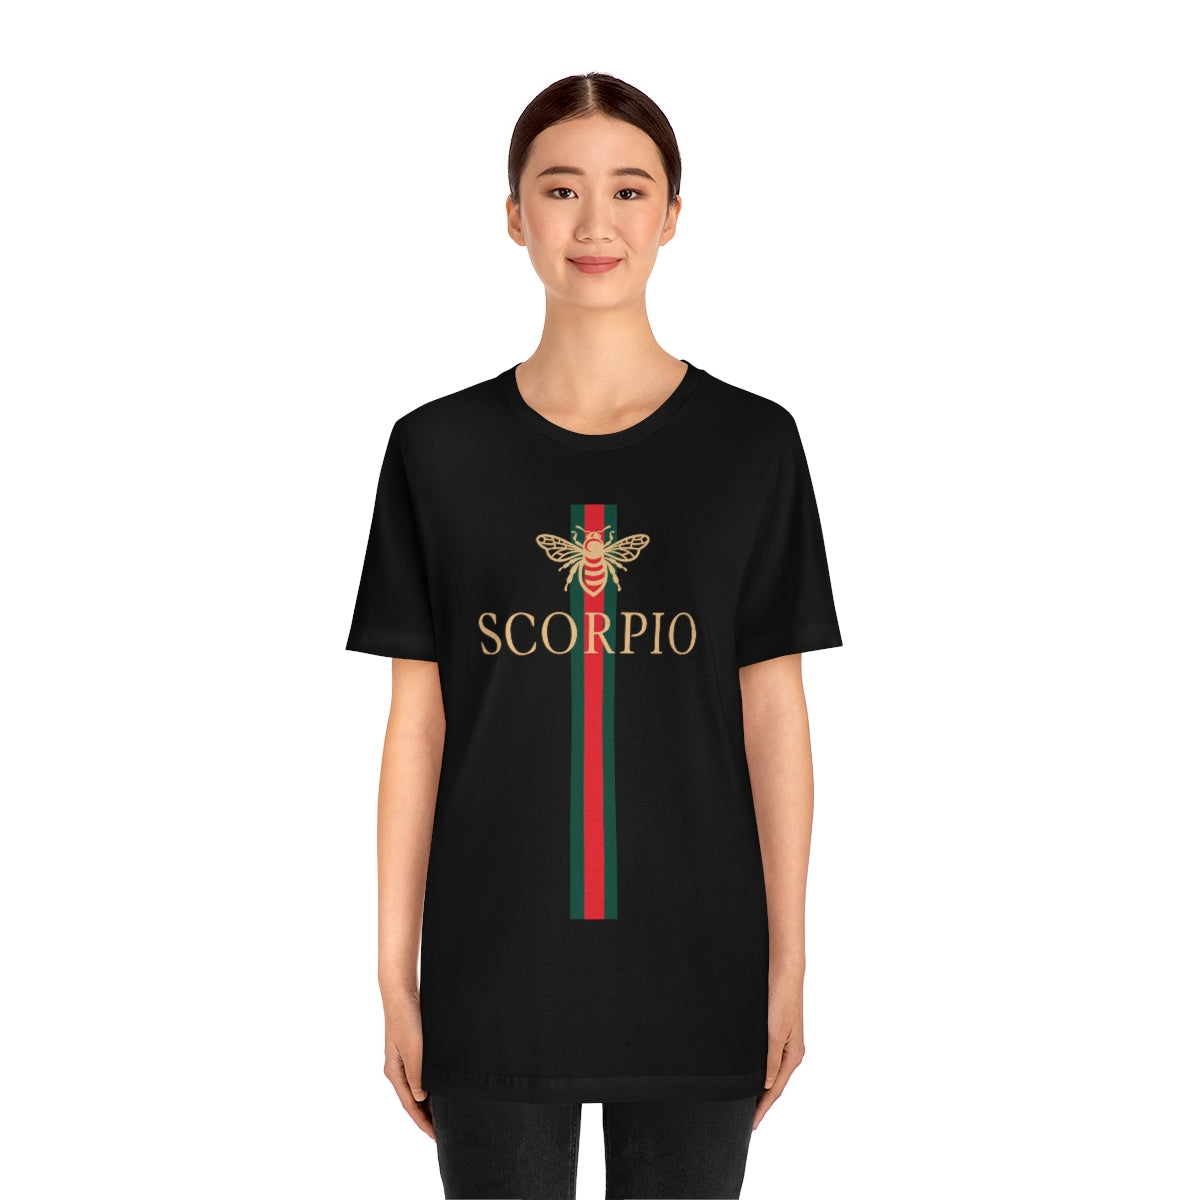 Scorpio Bee Girl Shirt